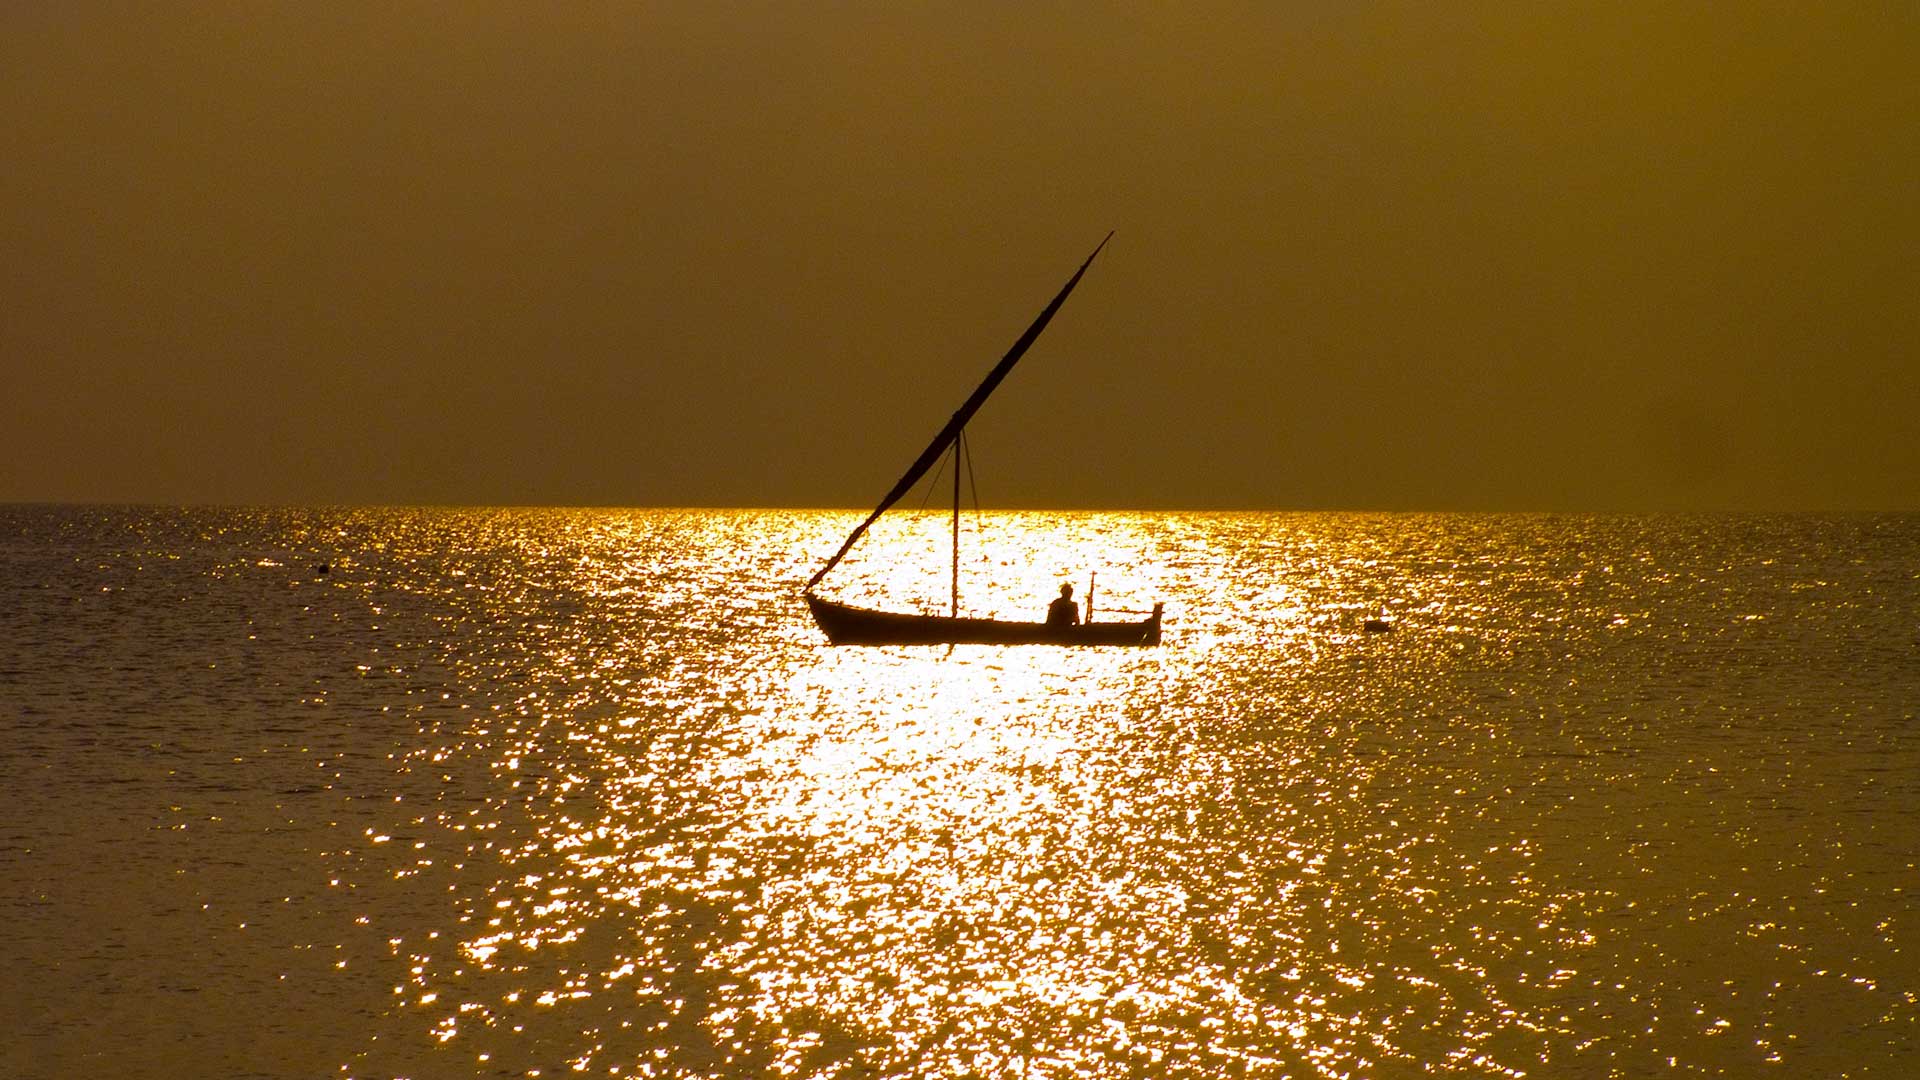 Maldives, fishing boat at sunset